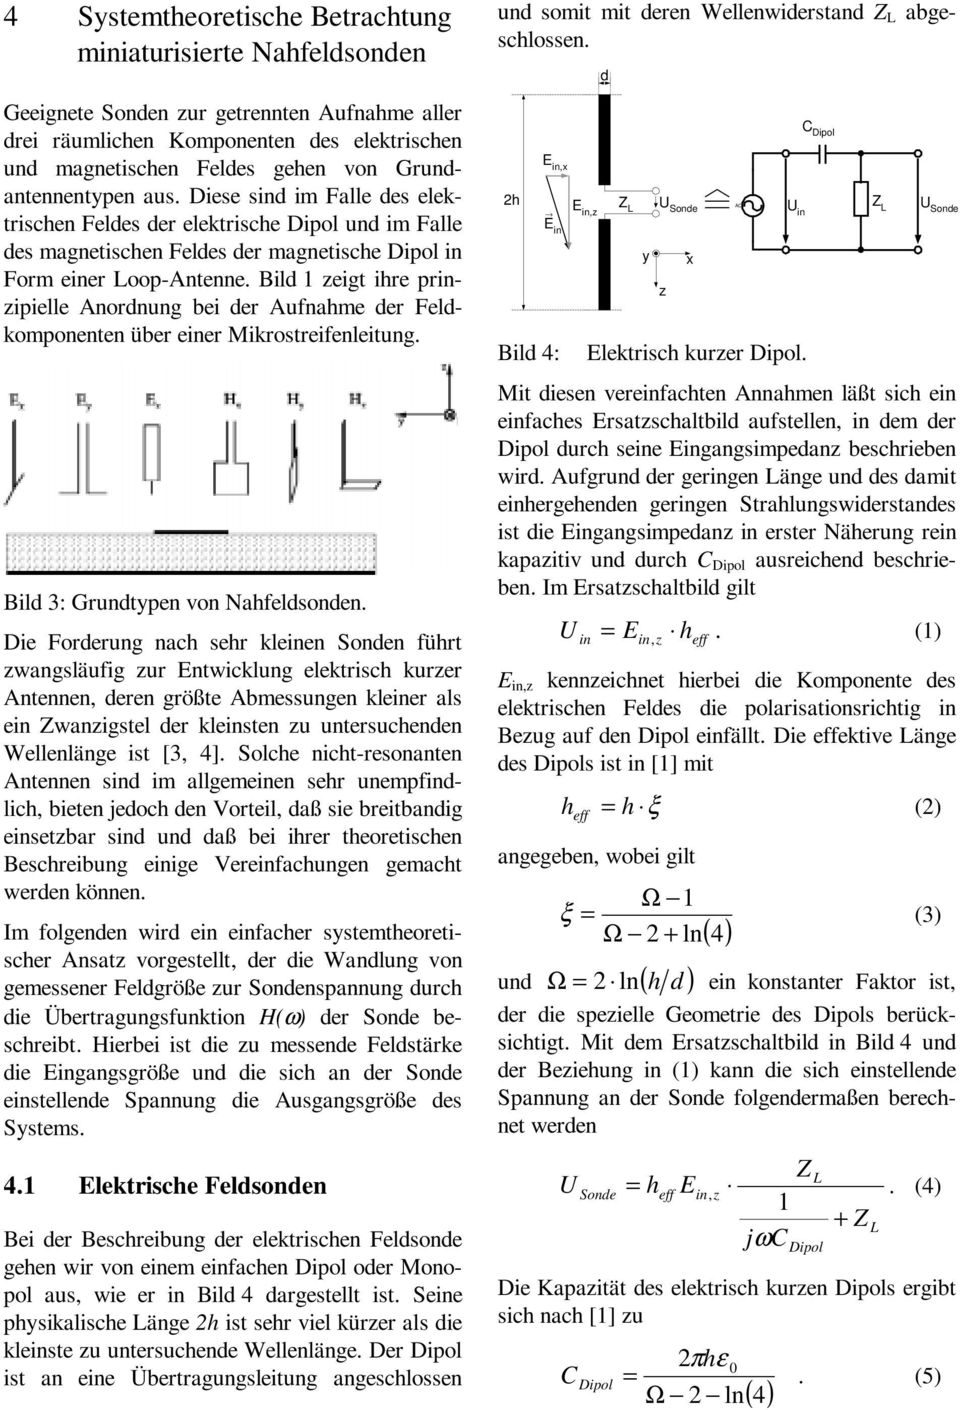 Bild 1 zeigt ihe pinzipielle Anodnung bei de Aufnahme de Feldkomponenten übe eine Mikosteifenleitung. Bild 3: Gundtypen von Nahfeldsonden.